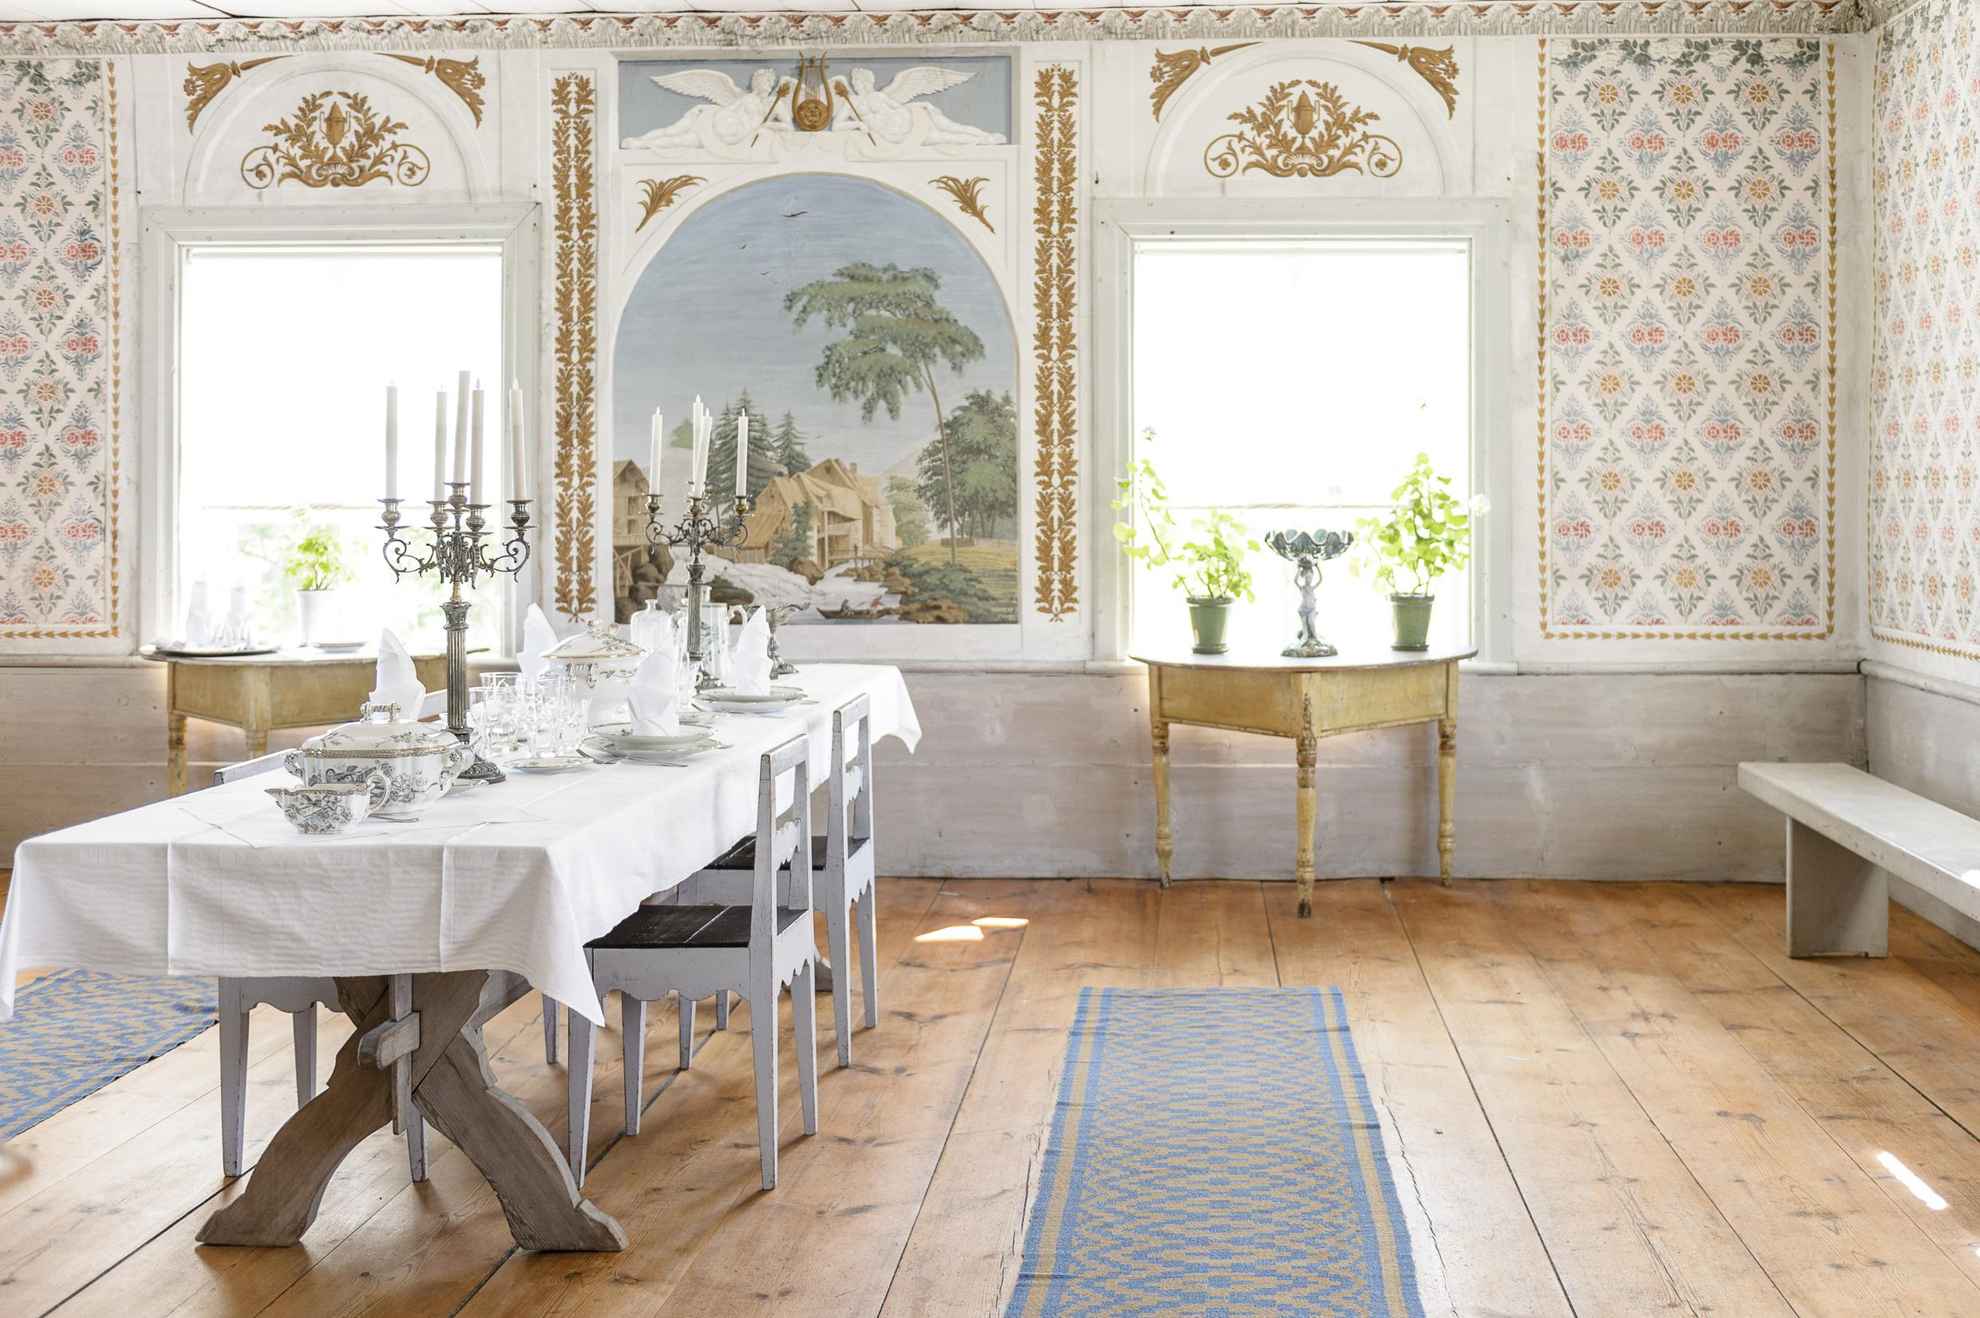 In een oude kamer staat een tafel met bestek, kroonluchters en stoelen. De muren zijn versierd met 19e-eeuwse stencils en daglicht schijnt door de ramen.